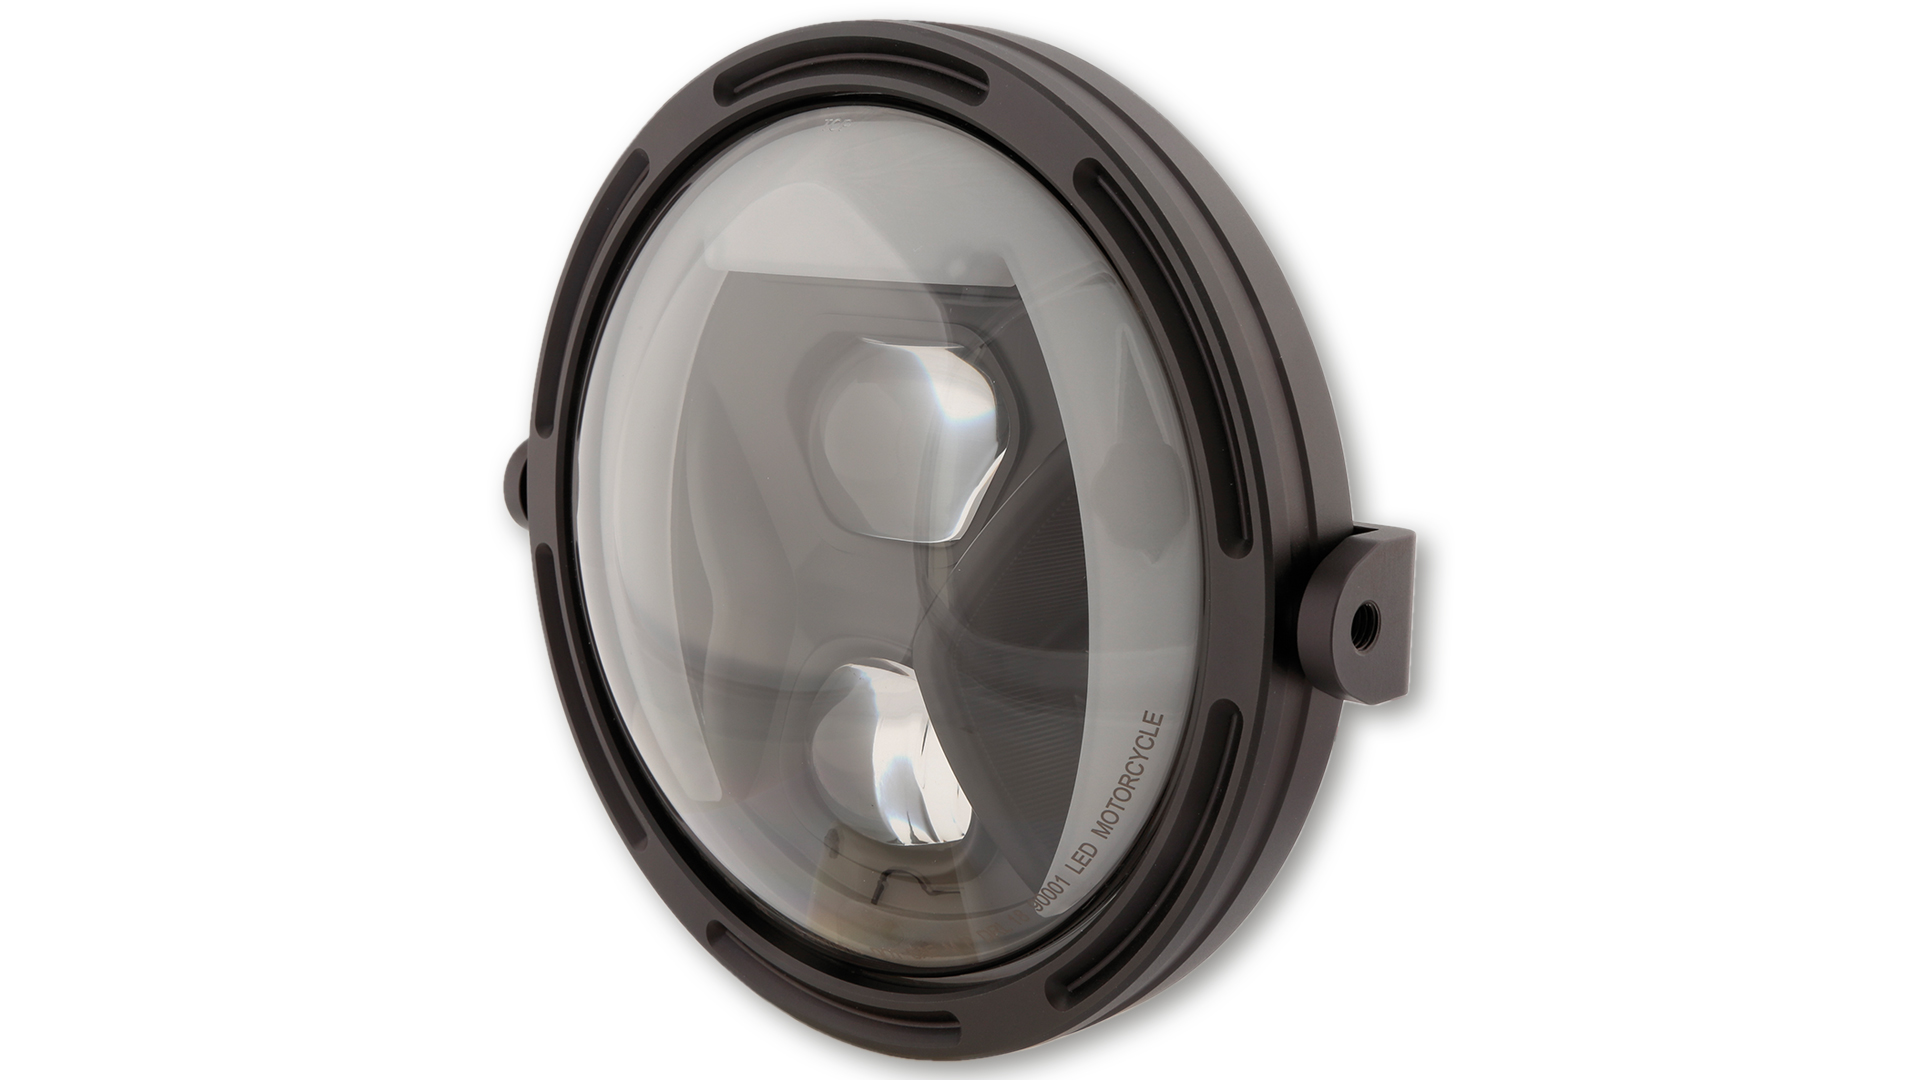 7 Zoll LED Hauptscheinwerfer mit Tagfahr-, Positions- und Kurvenlicht, rund, Reflektor Schwarz, mit getöntem Glas, E-geprüft. Erhältlich mit seitlicher oder unterer Befestigung.